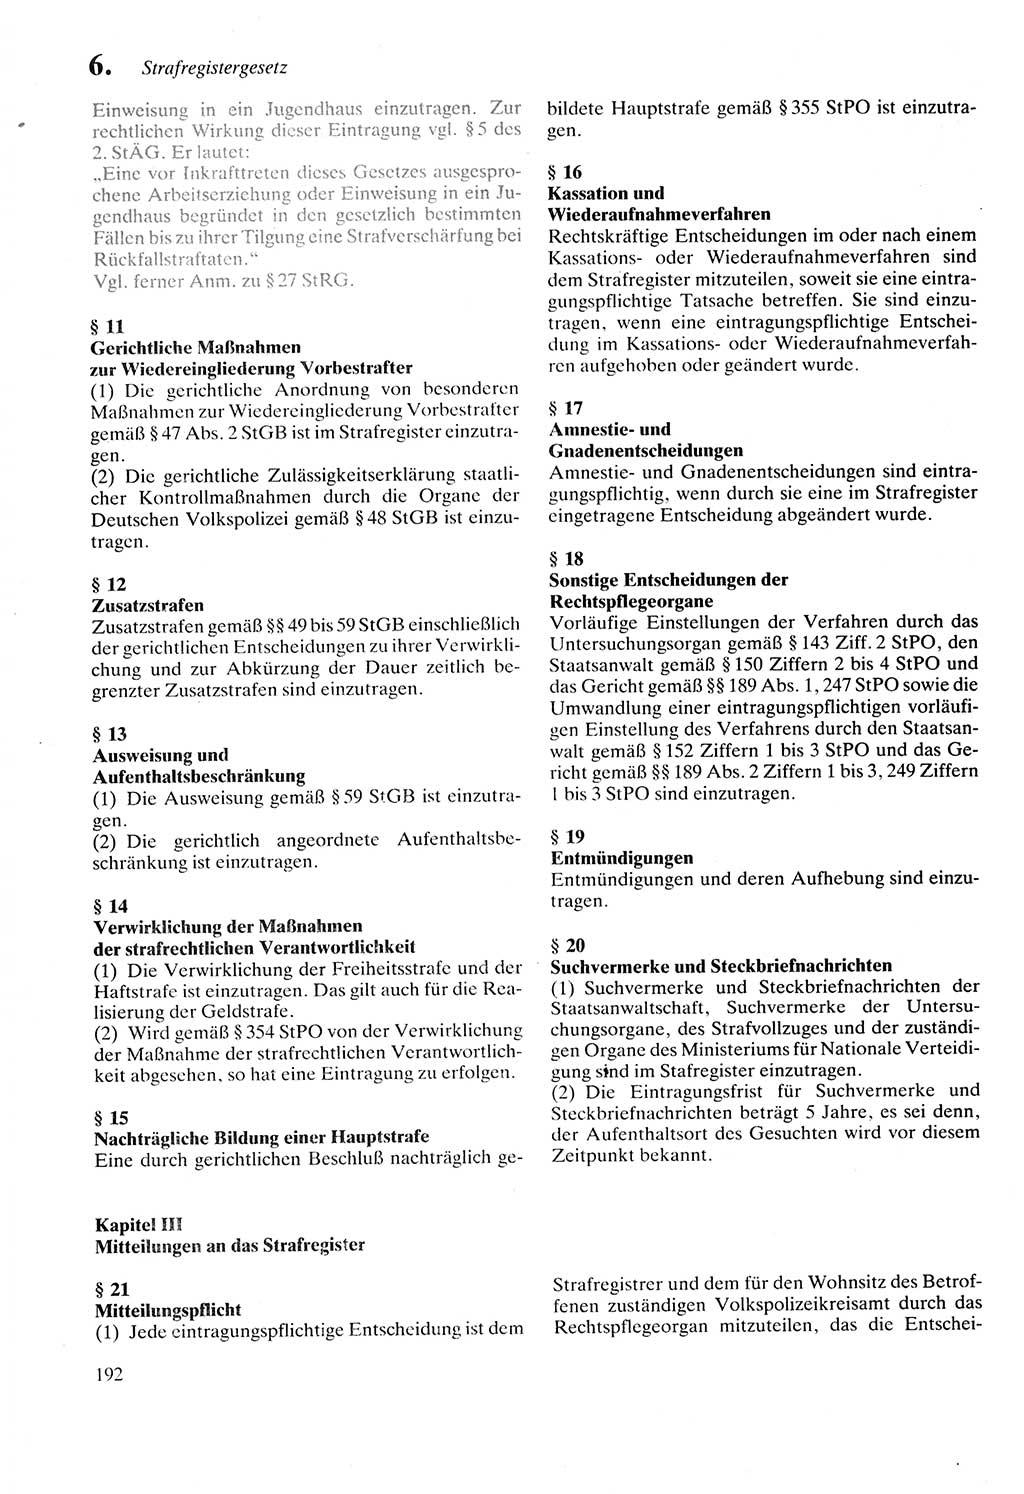 Strafprozeßordnung (StPO) der Deutschen Demokratischen Republik (DDR) sowie angrenzende Gesetze und Bestimmungen 1987, Seite 192 (StPO DDR Ges. Best. 1987, S. 192)